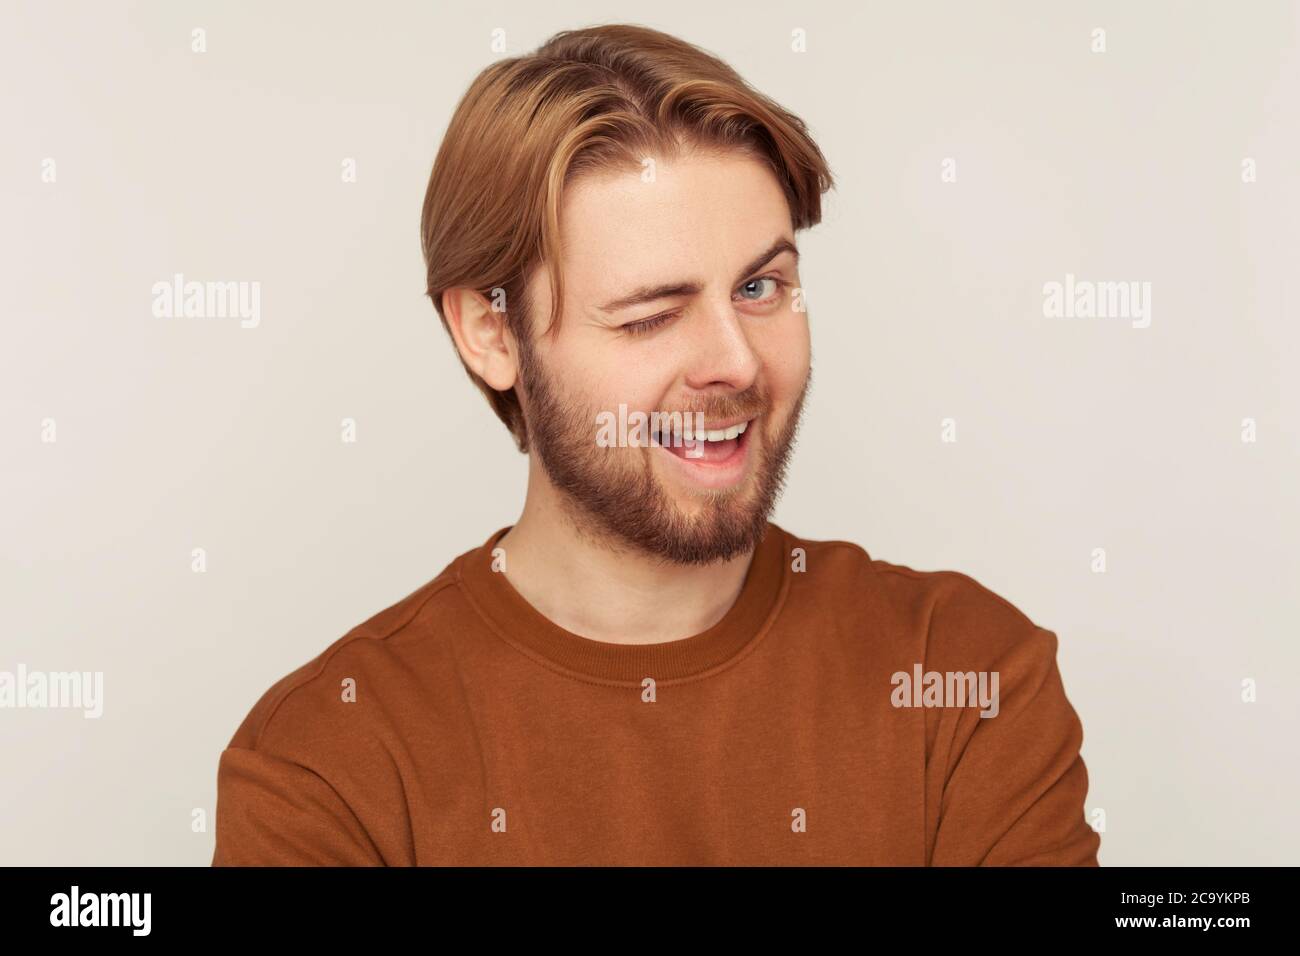 Ritratto di un giovane ottimista felice con capelli e barba puliti che indossa una felpa che si inaridisce alla macchina fotografica, guardando giocosamente e occhi lampeggianti, rallegrandosi. Foto Stock